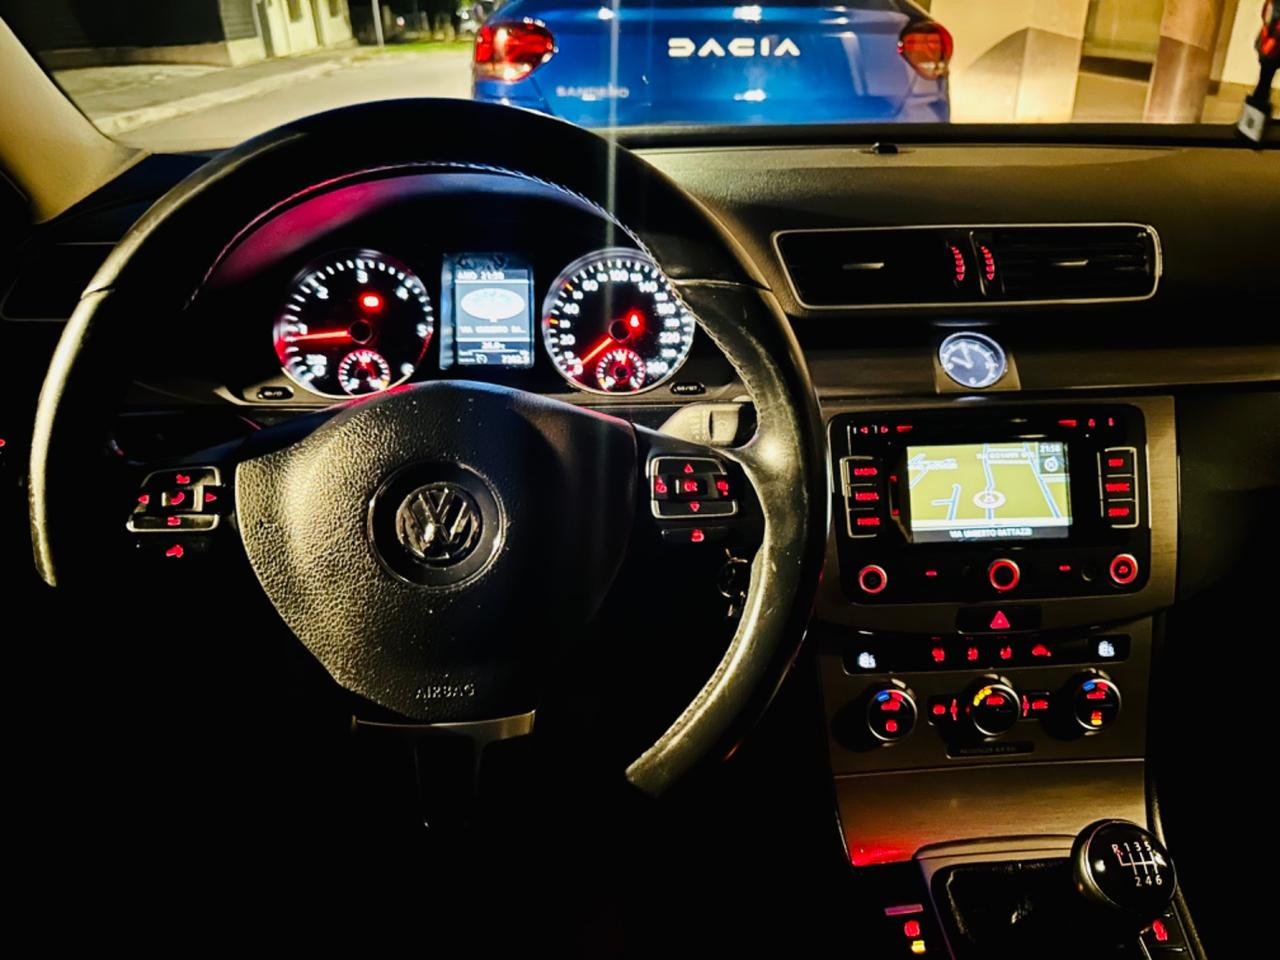 Volkswagen Passat 2014 2.0 TDI Comfortline BlueM. Tech.